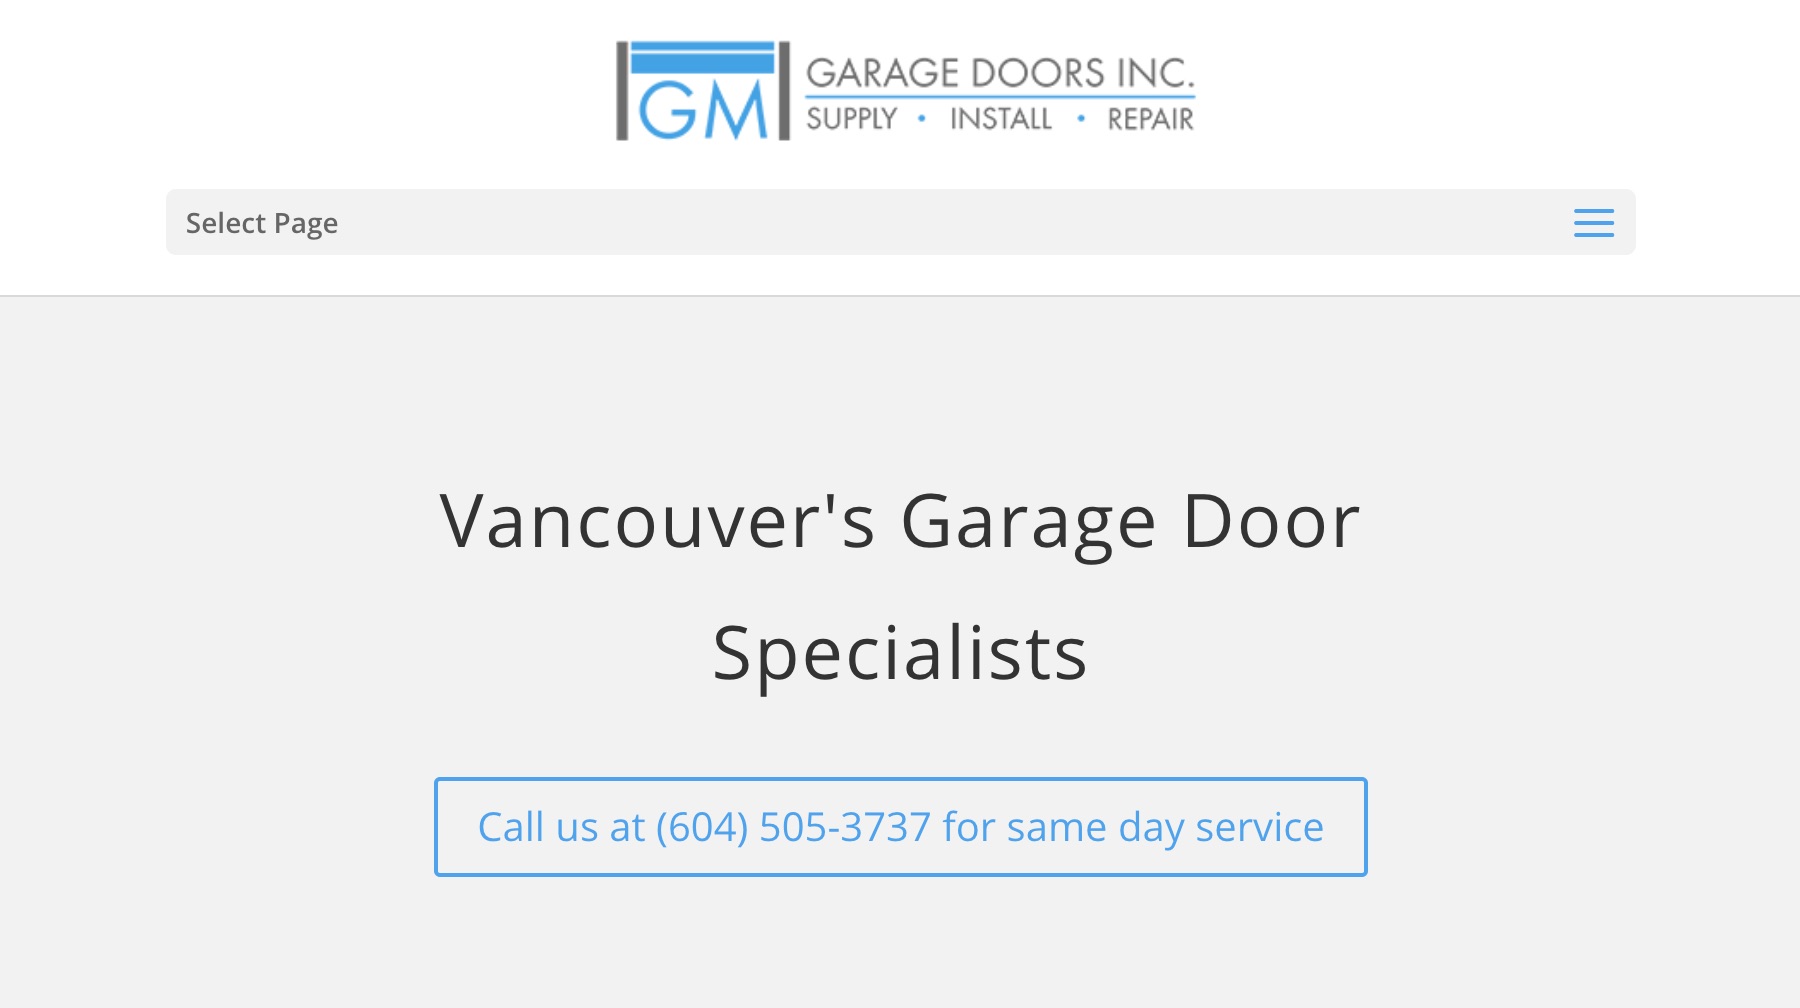 GM Garage Doors